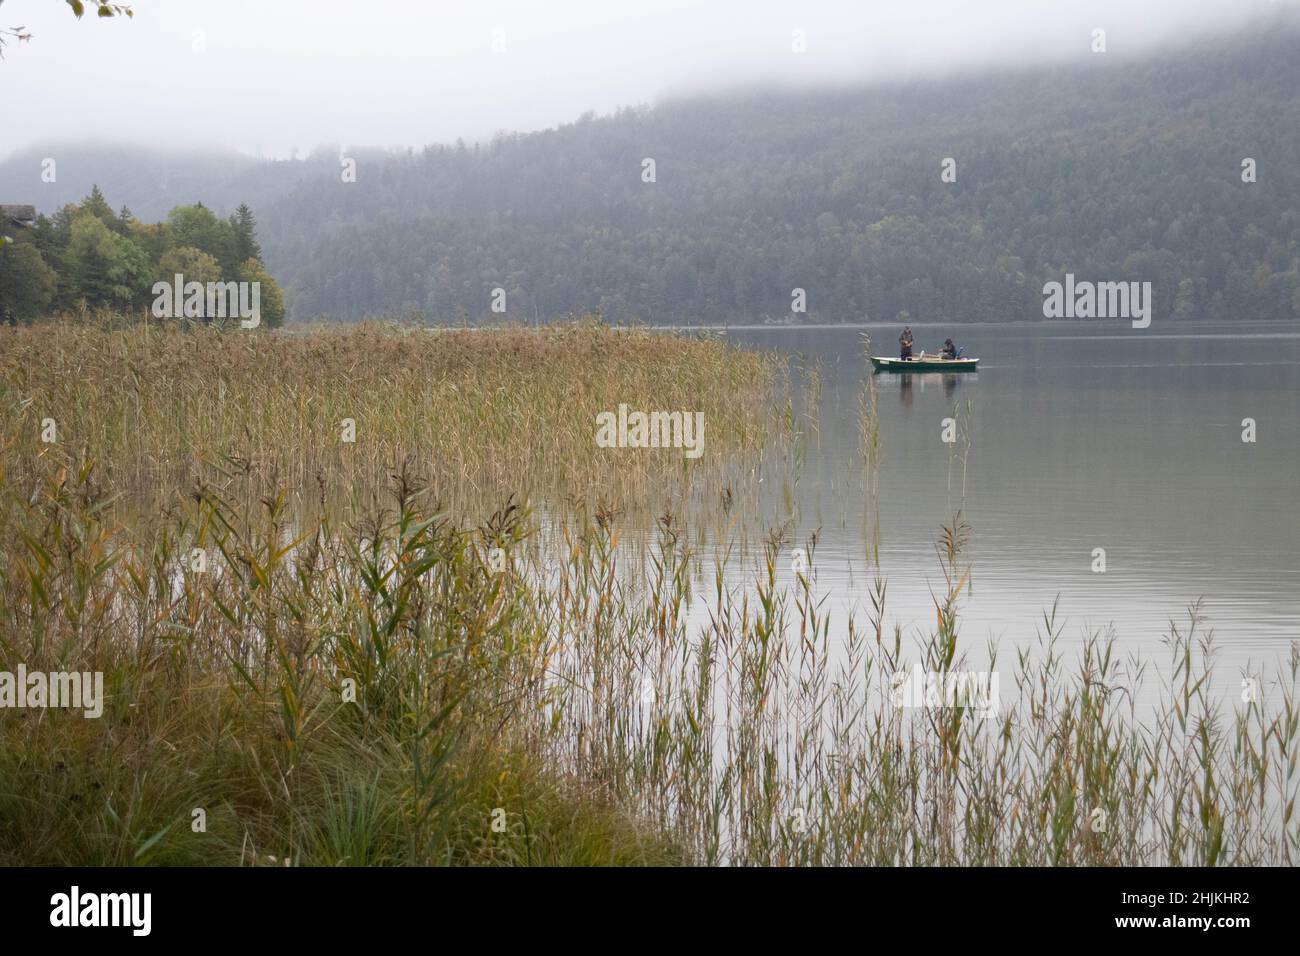 Bei Nebel und Nieselregen versuchen zwei Angler ihr Glück auf dem Weissensee in Füssen Stock Photo